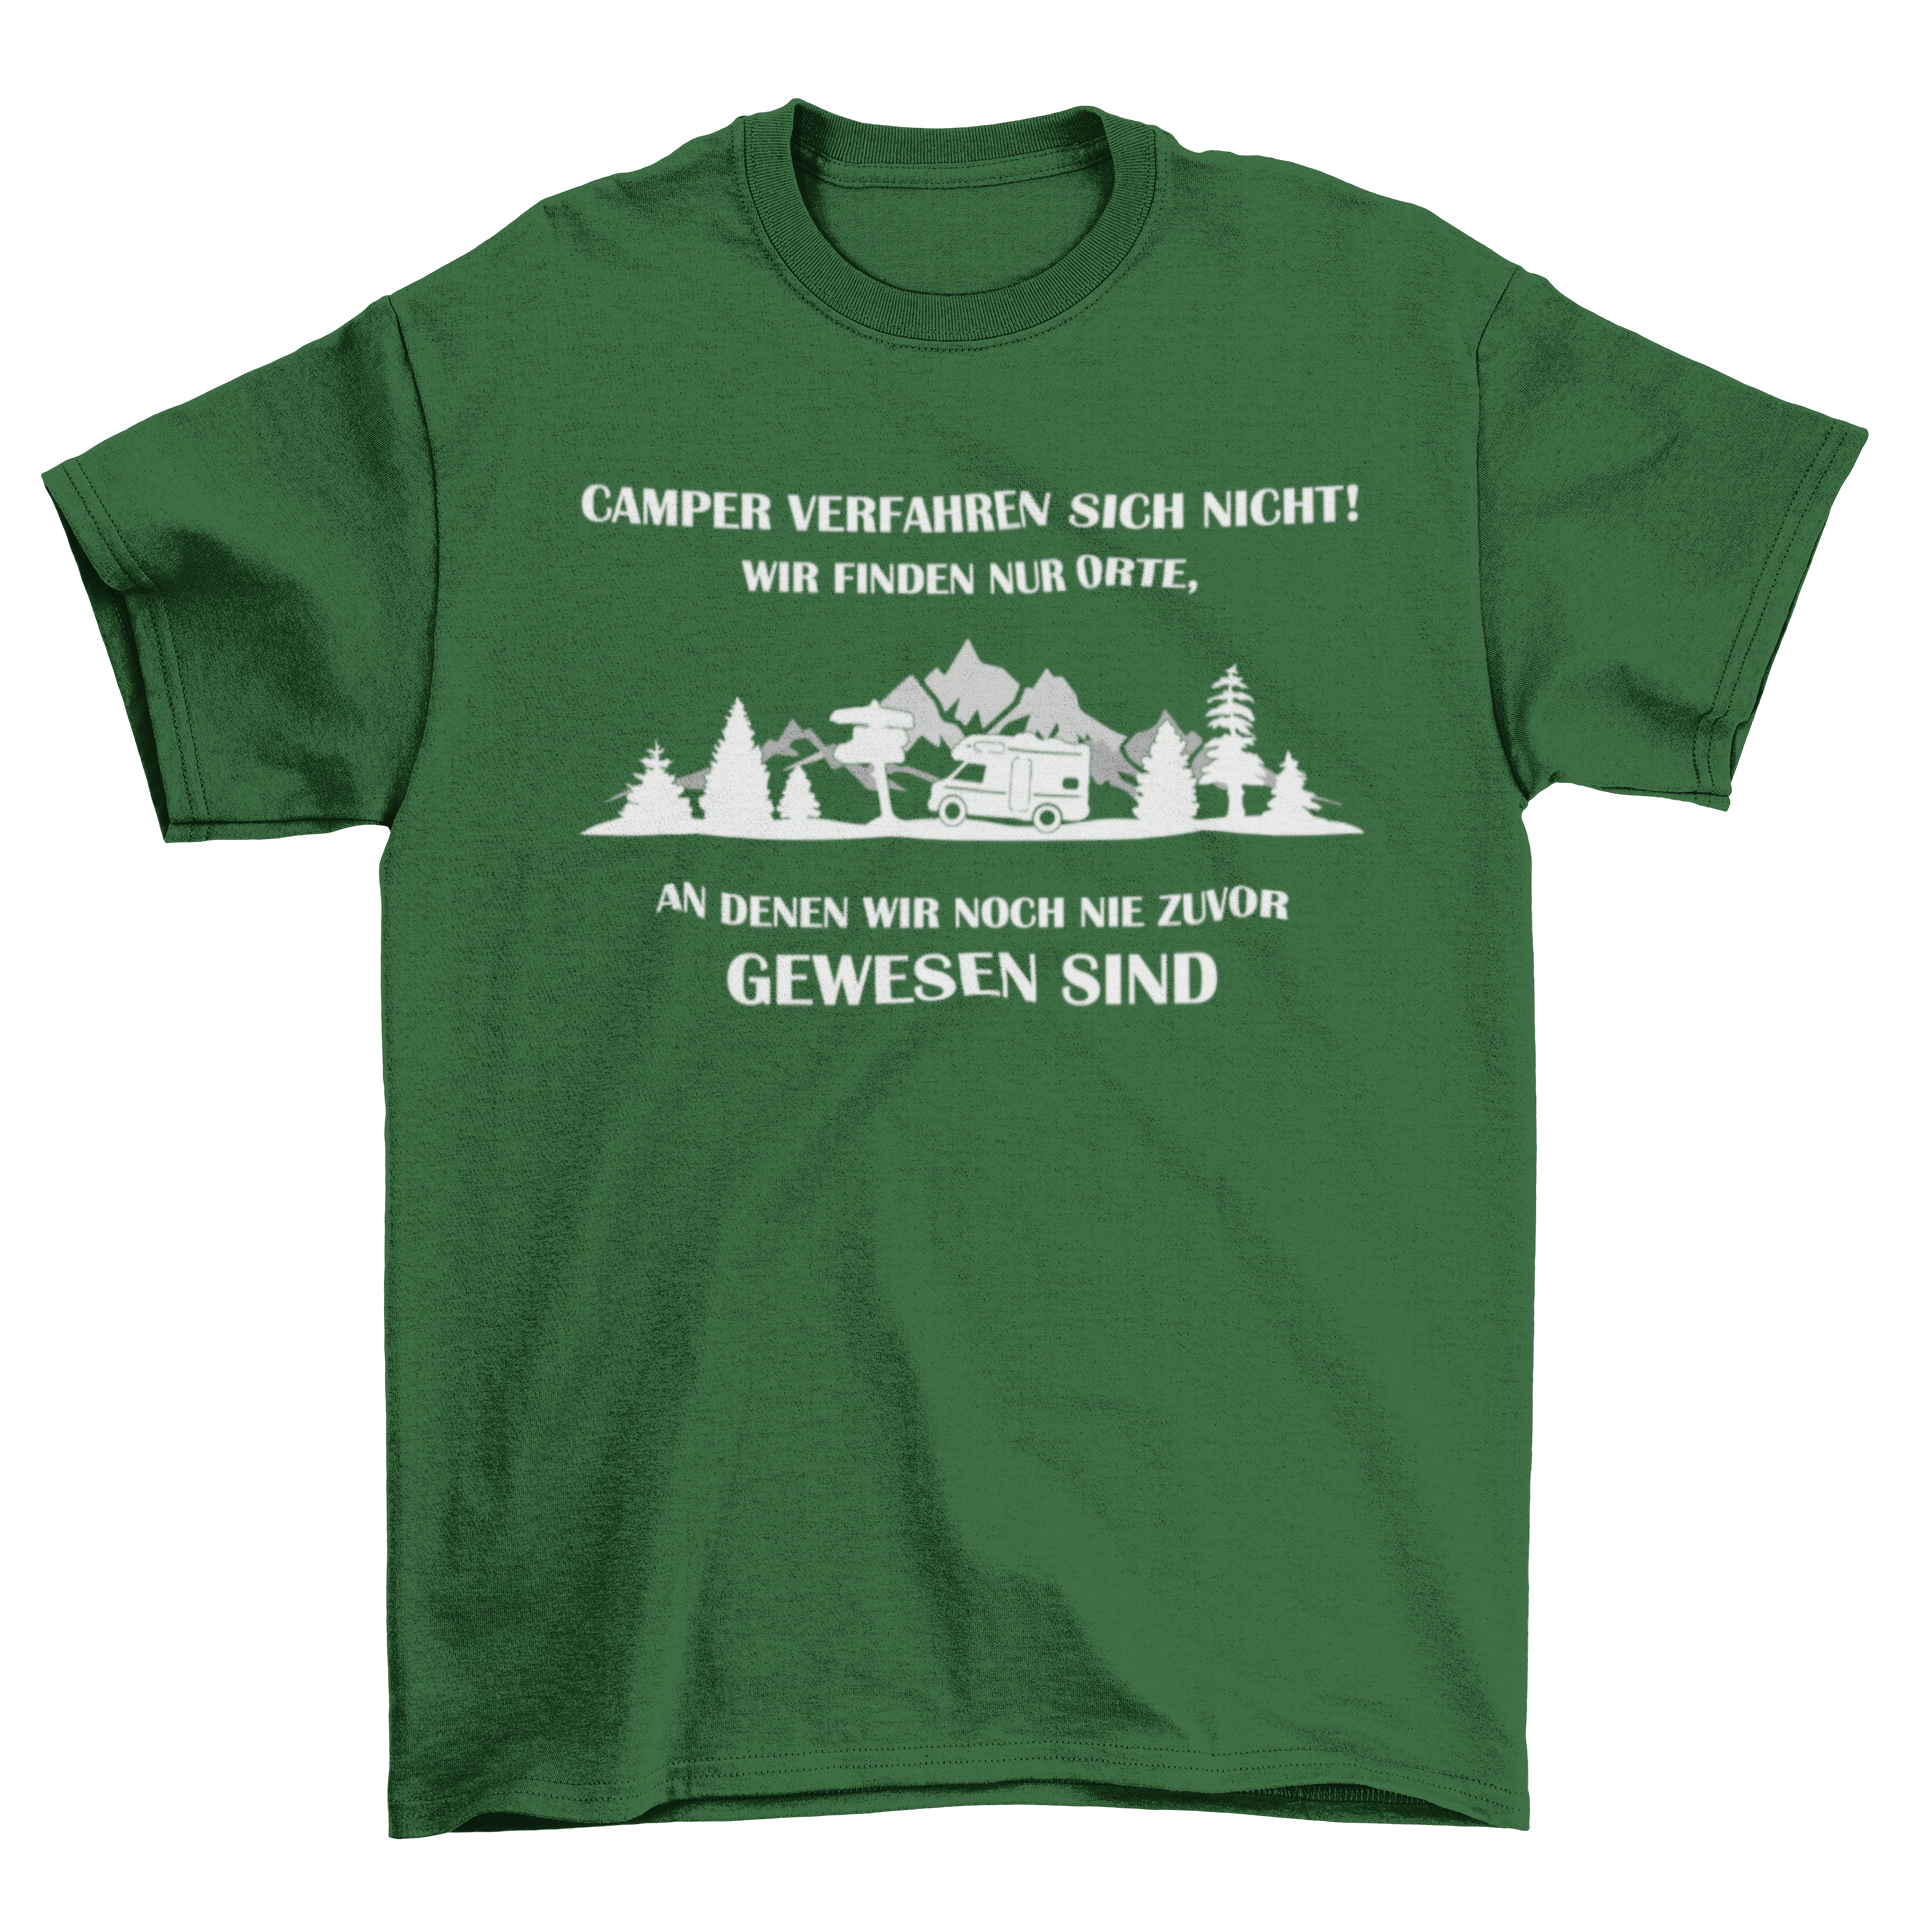 Camper verfahren sich nicht  - T-Shirt